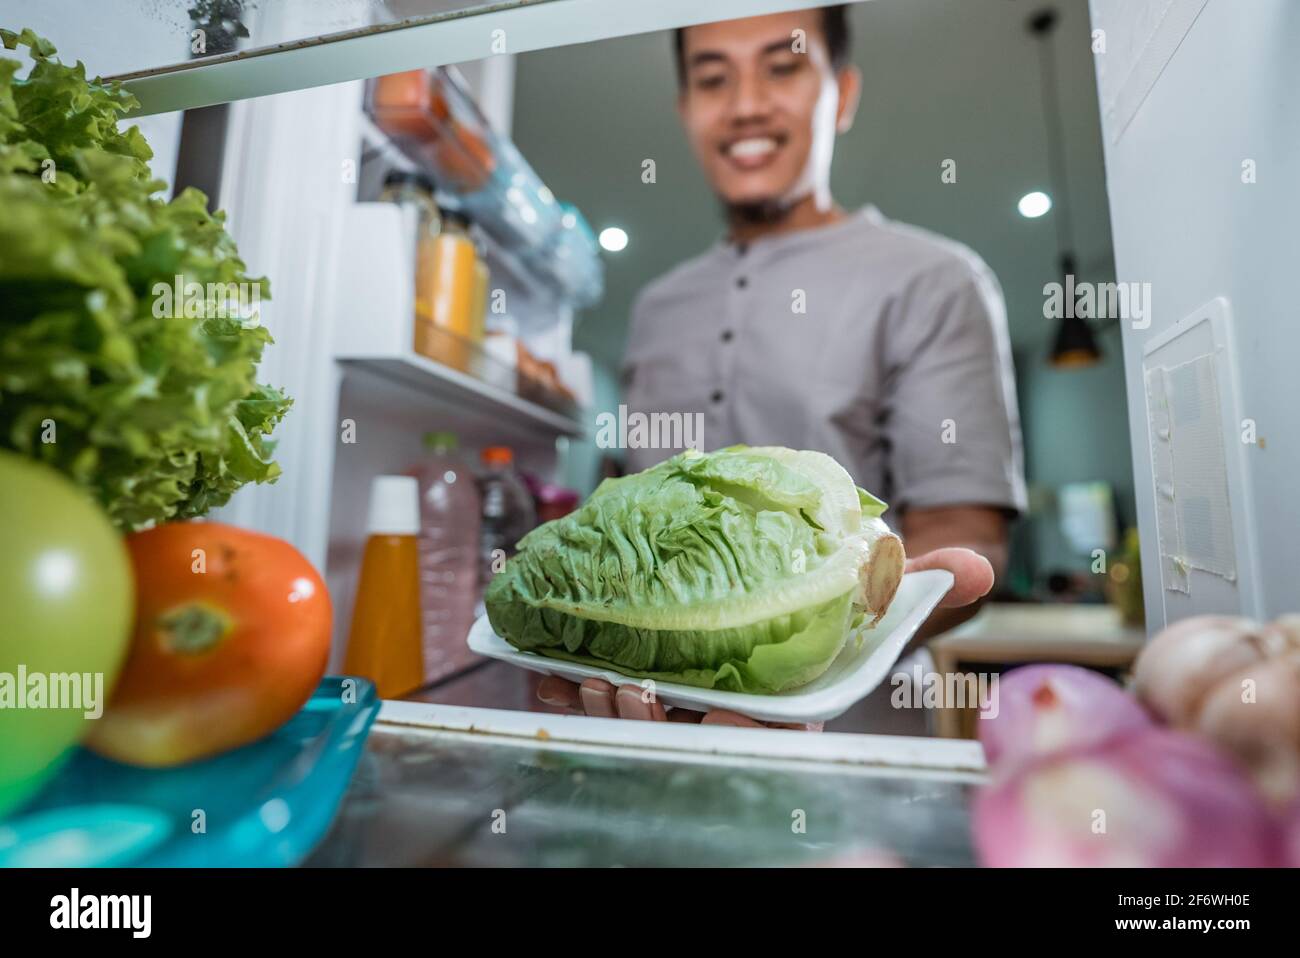 asiatischer Mann nimmt Zutaten aus dem Kühlschrank, um zu kochen  Stockfotografie - Alamy